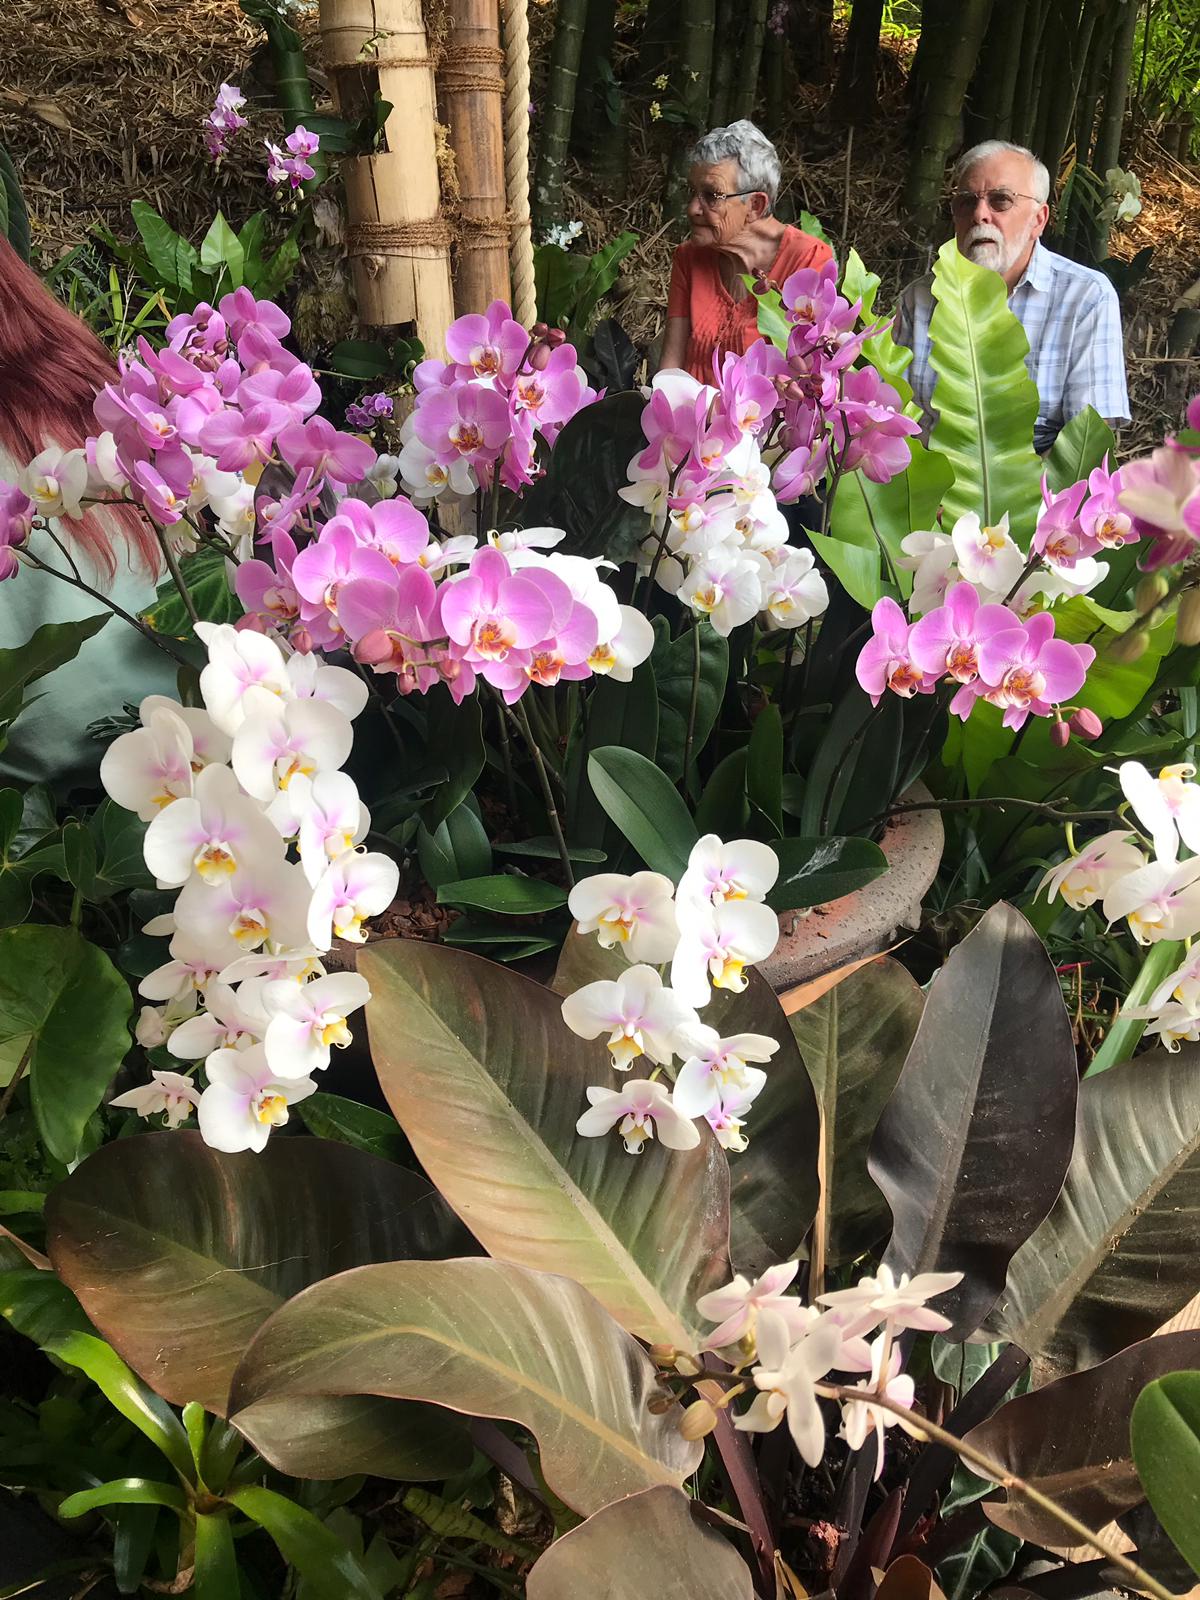 Orquídeas ticas destacan en “jardín del Edén” británico